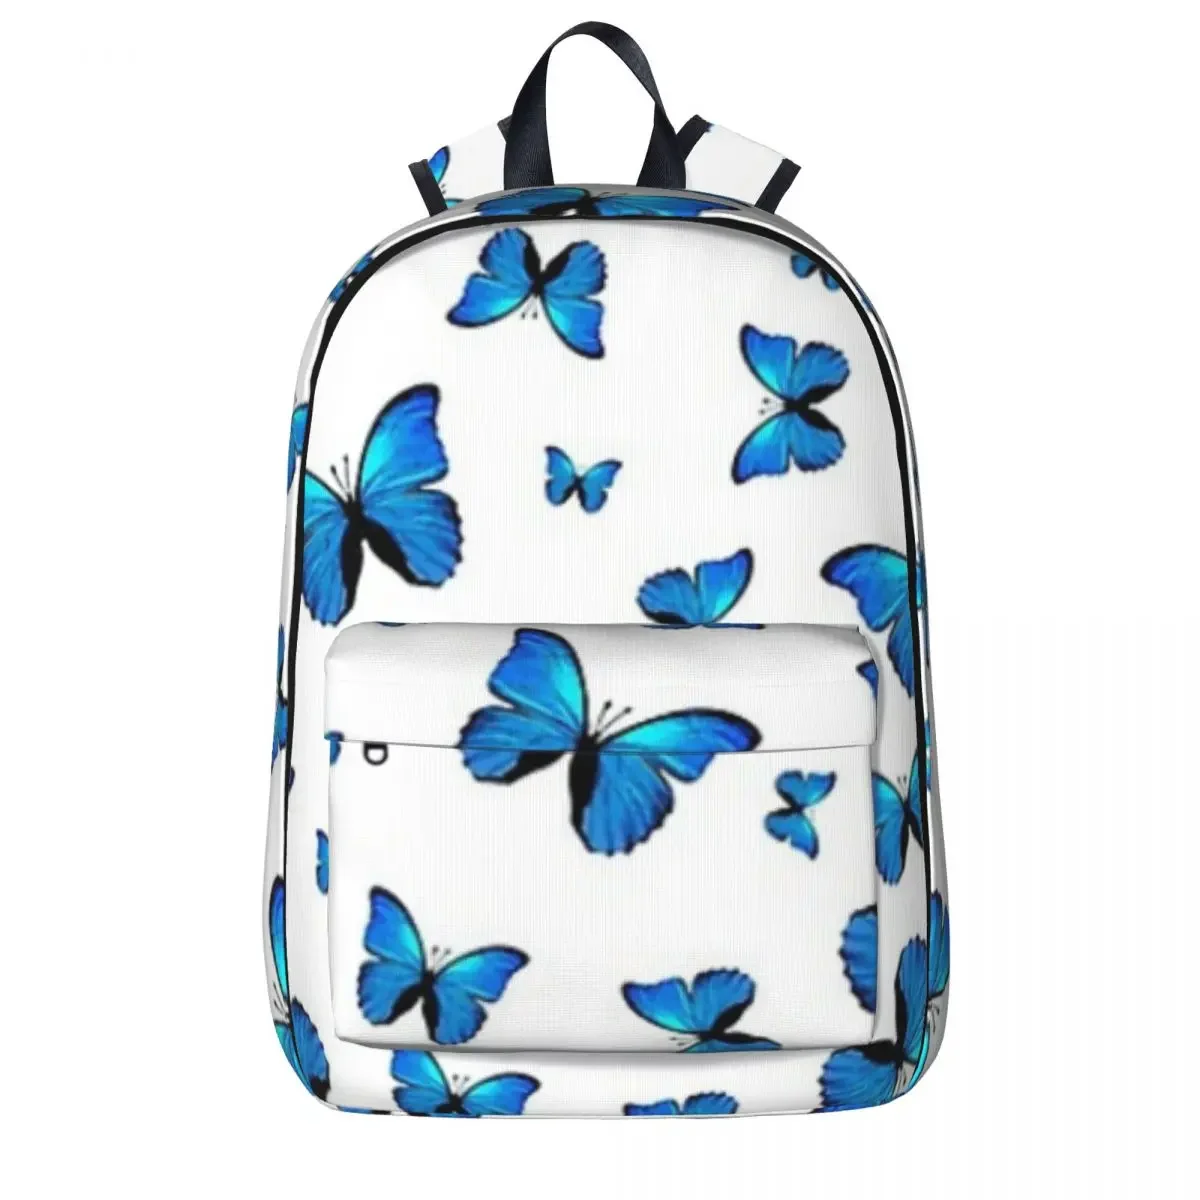 

Blue Butterflies Print Backpack Waterproof Student School Bag Laptop Rucksack Travel Rucksack Large Capacity Bookbag